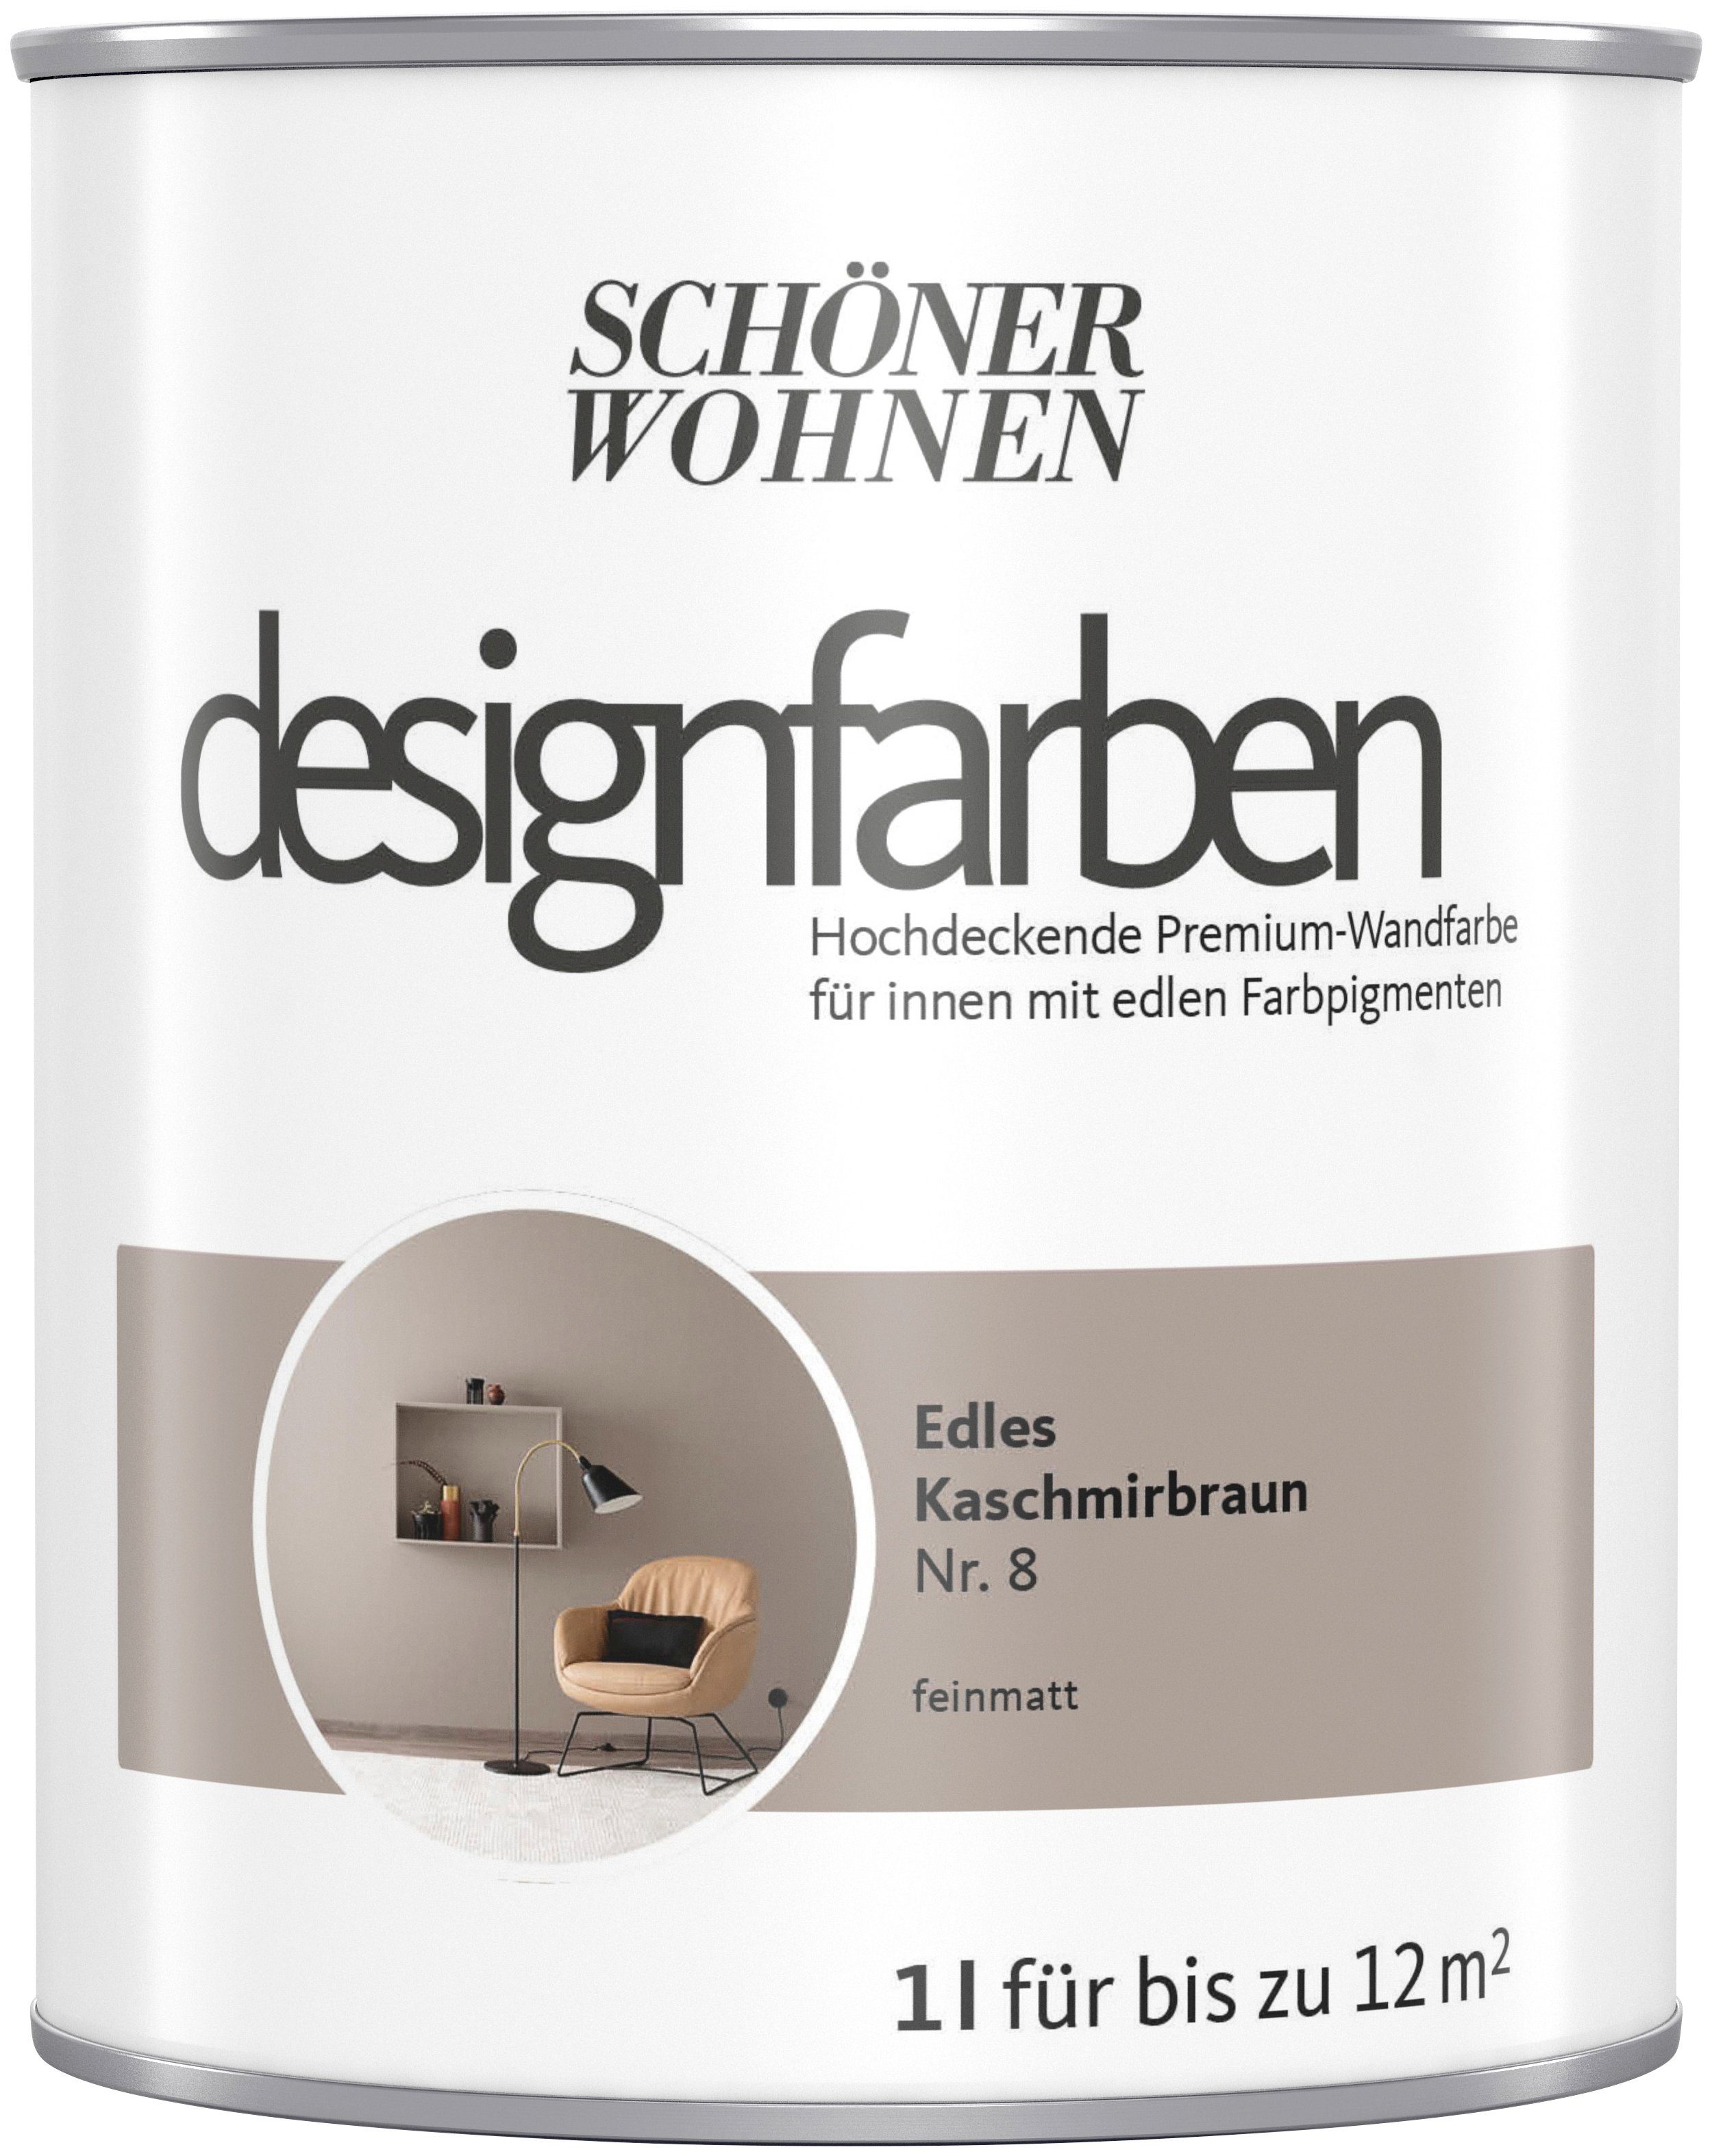 SCHÖNER WOHNEN FARBE Wand- und Deckenfarbe designfarben, 1 Liter, Edles Kaschmirbraun Nr. 8, hochdeckende Premium-Wandfarbe